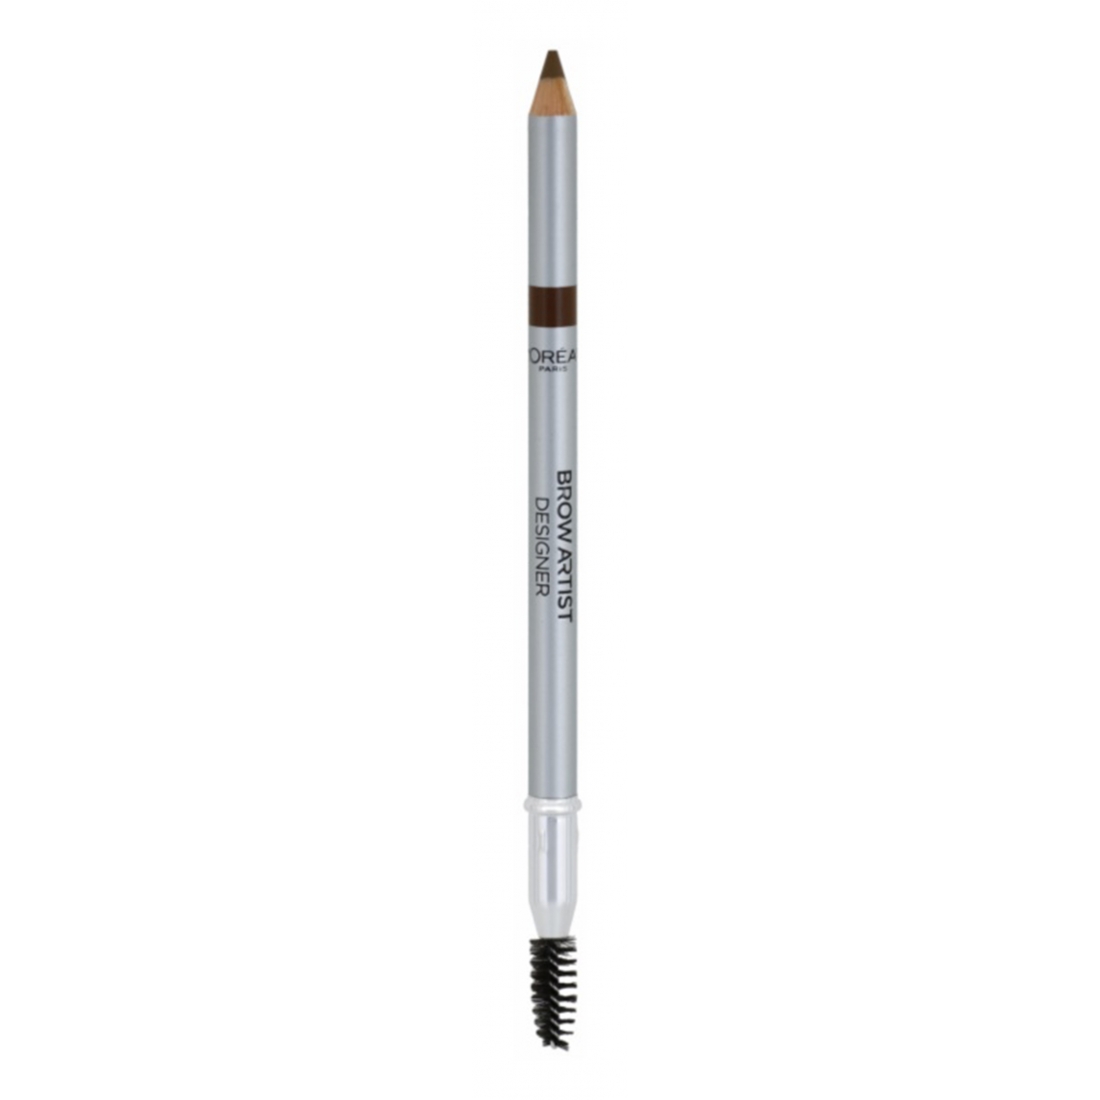 'Color Riche Brow Artist' Eyebrow Pencil - 302 Golden Brown 1 g